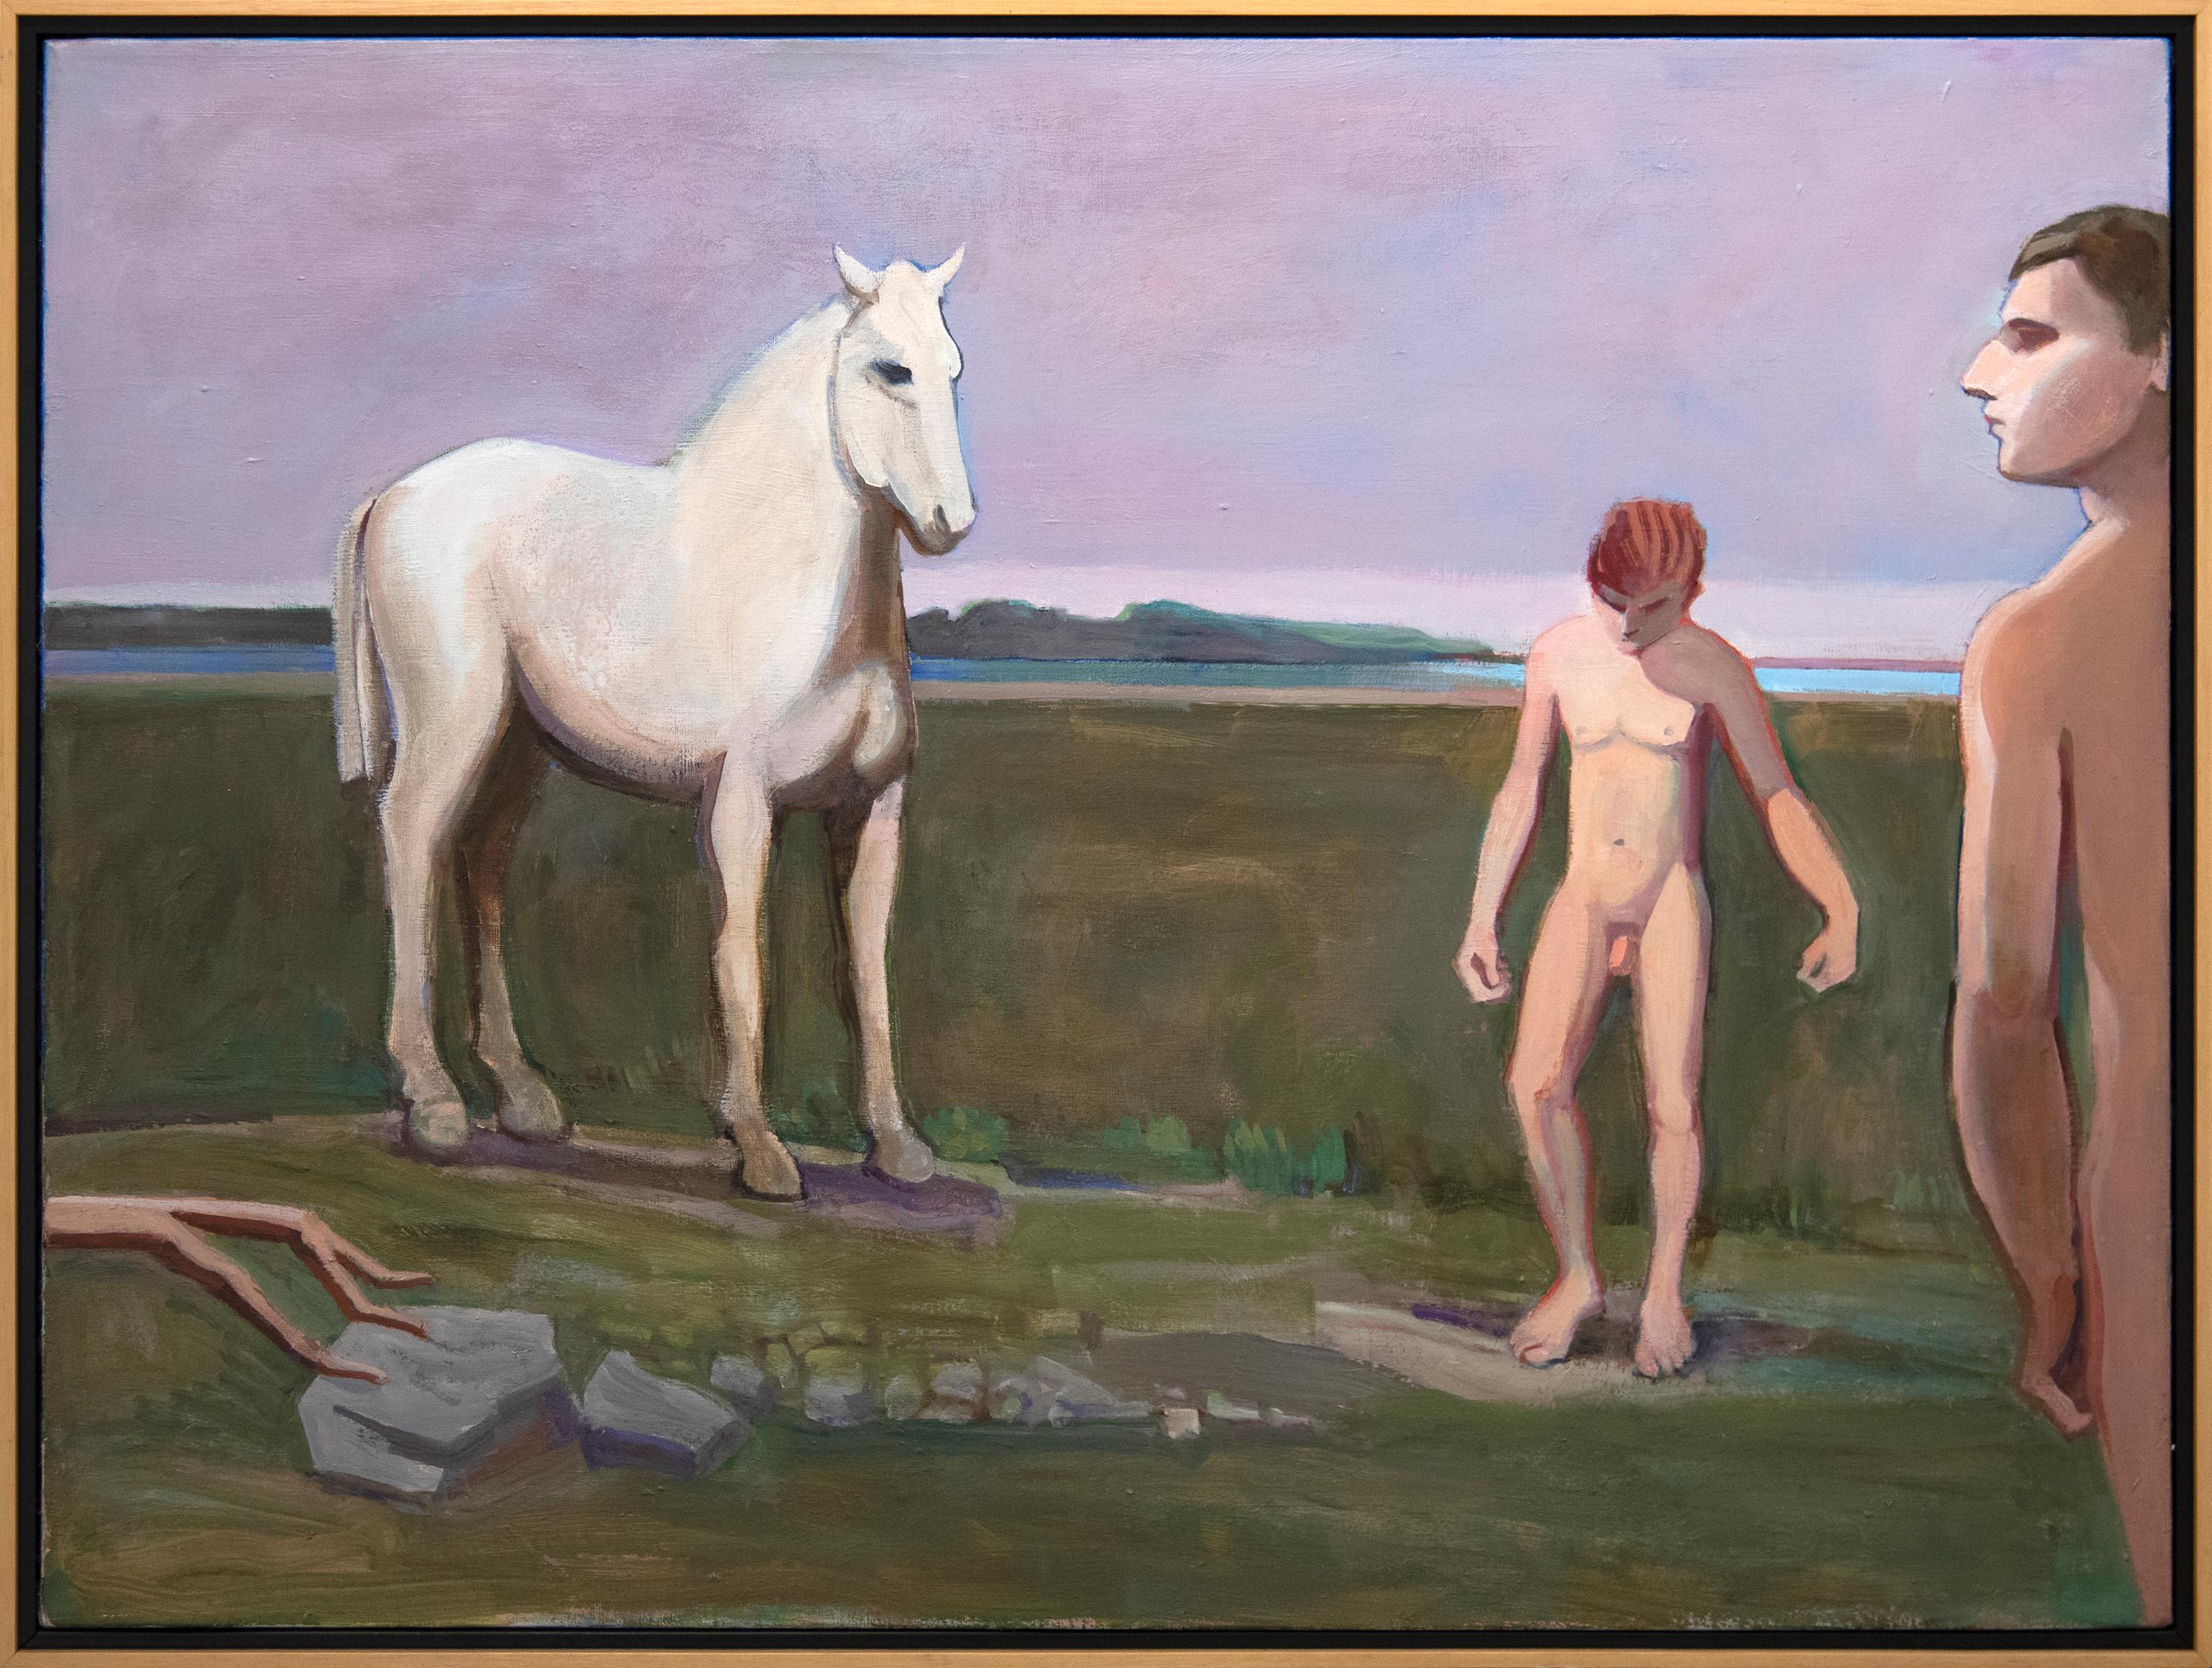 Horse with Swimmers at Beach - Cheval avec des nageurs à la plage - Painting de William Theophilus Brown